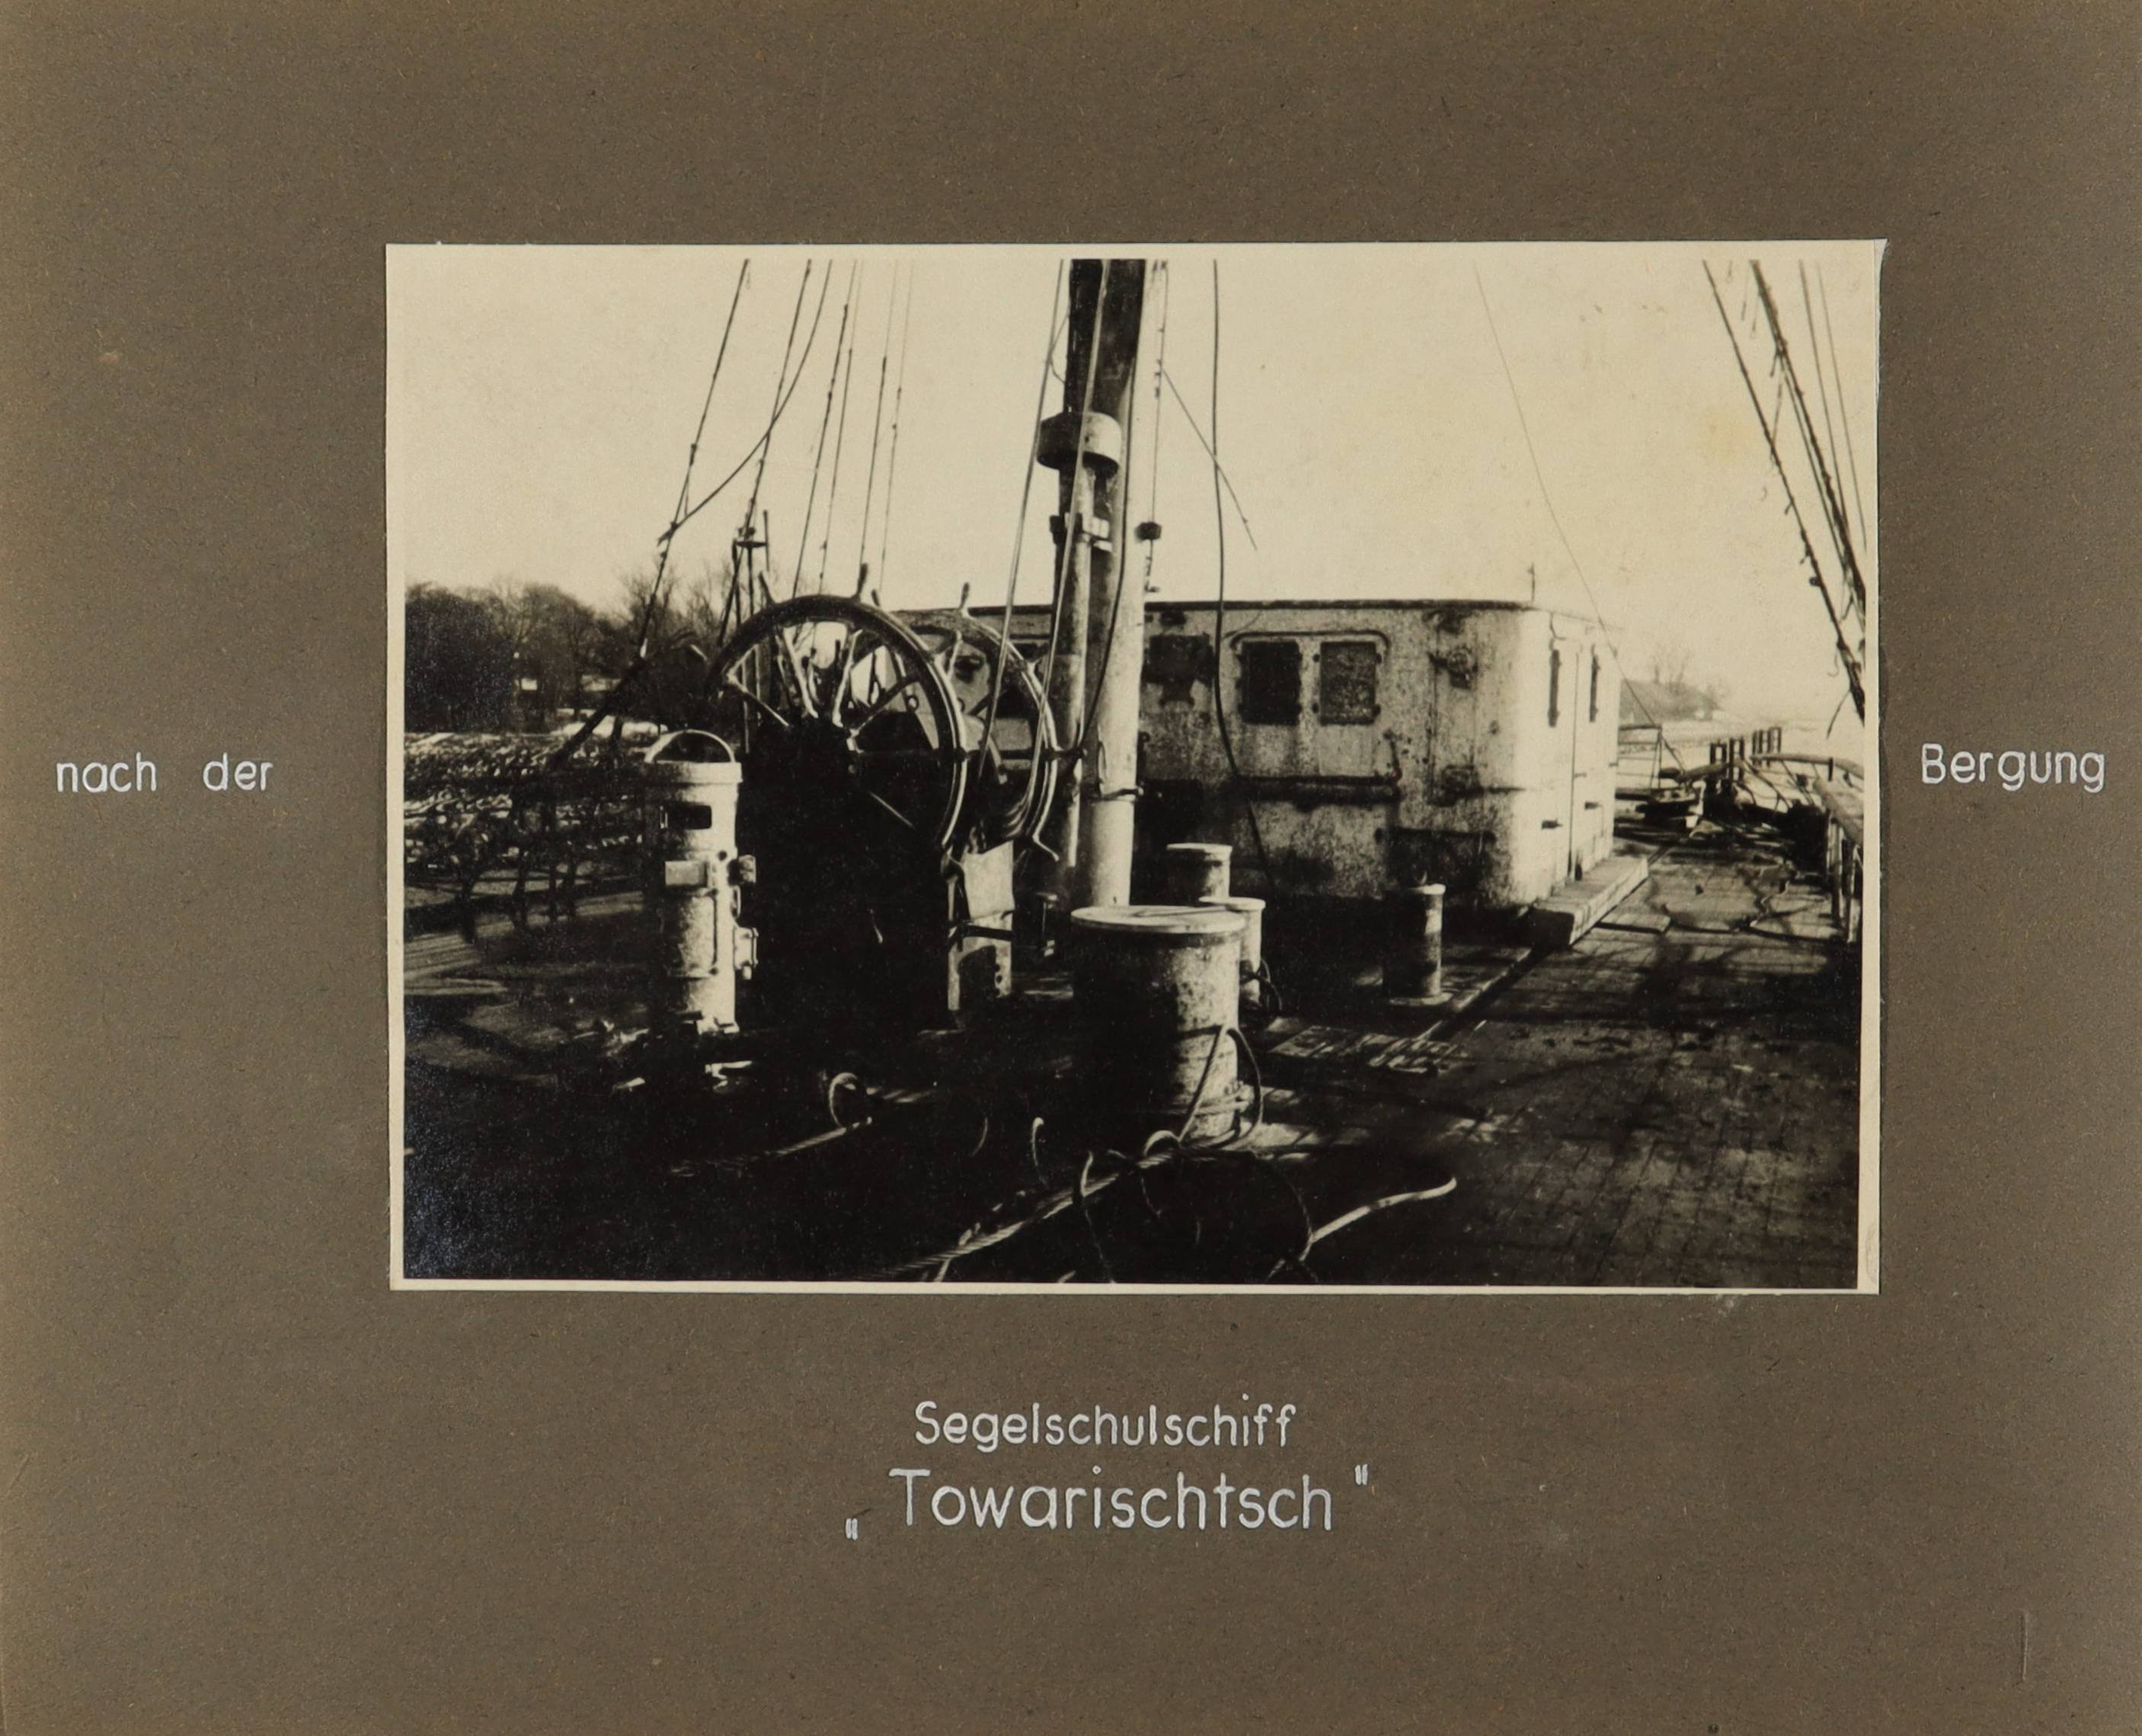 Blick über das Deck des Segelschulschiffs "Gorch Fock I" (die spätere "Towarischtsch") nach der Bergung (Schiffbau- und Schiffahrtsmuseum Rostock RR-F)